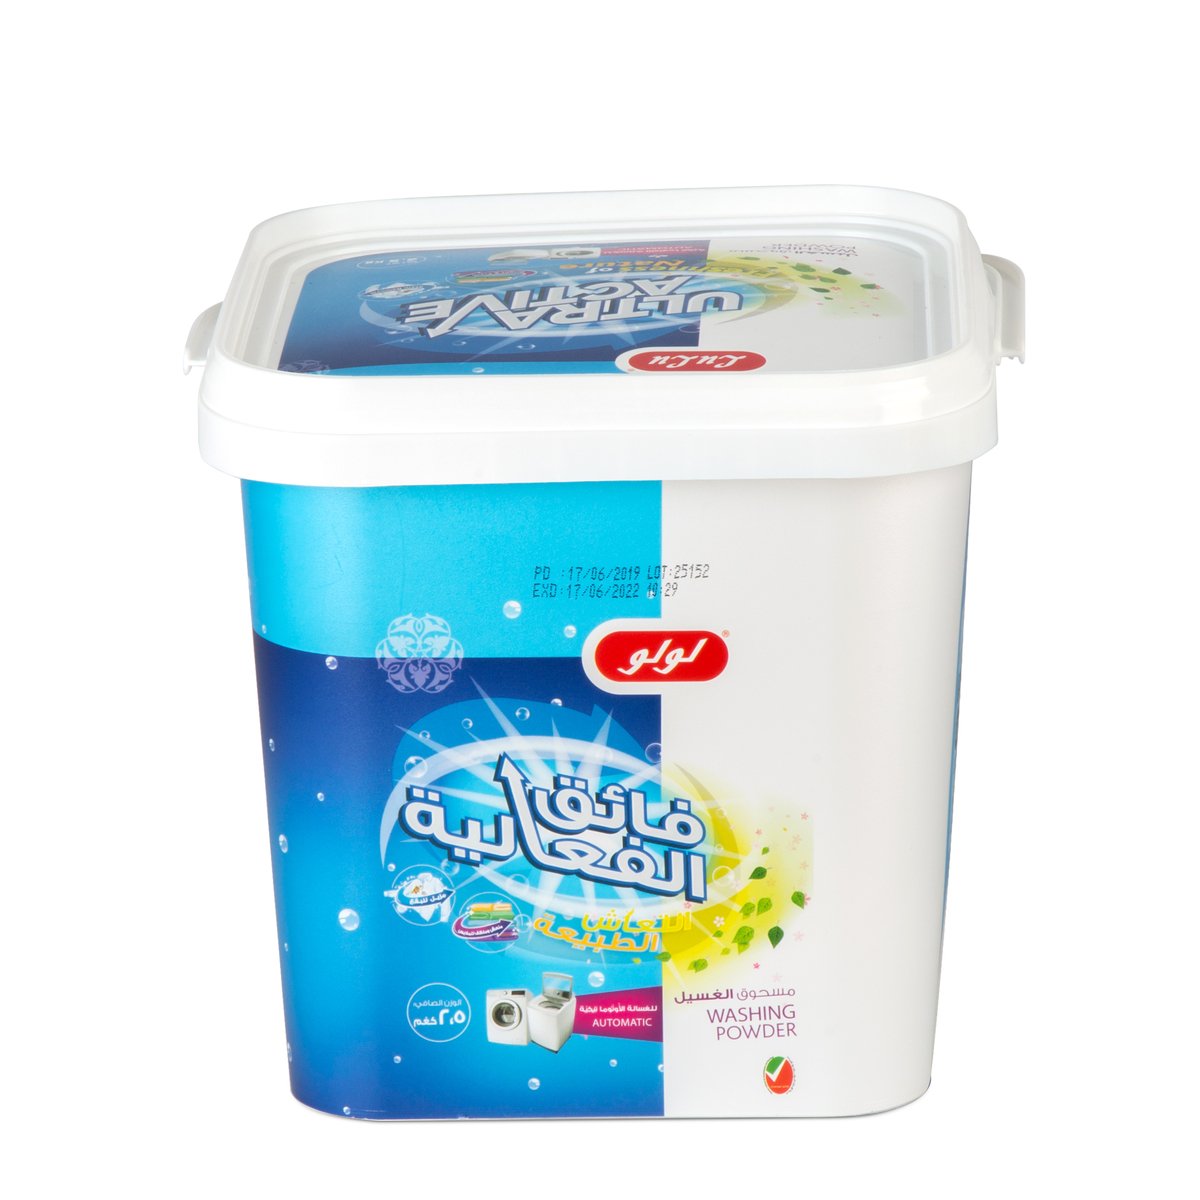 LuLu Ultra Active Washing Powder Freshness of Nature 2.5kg